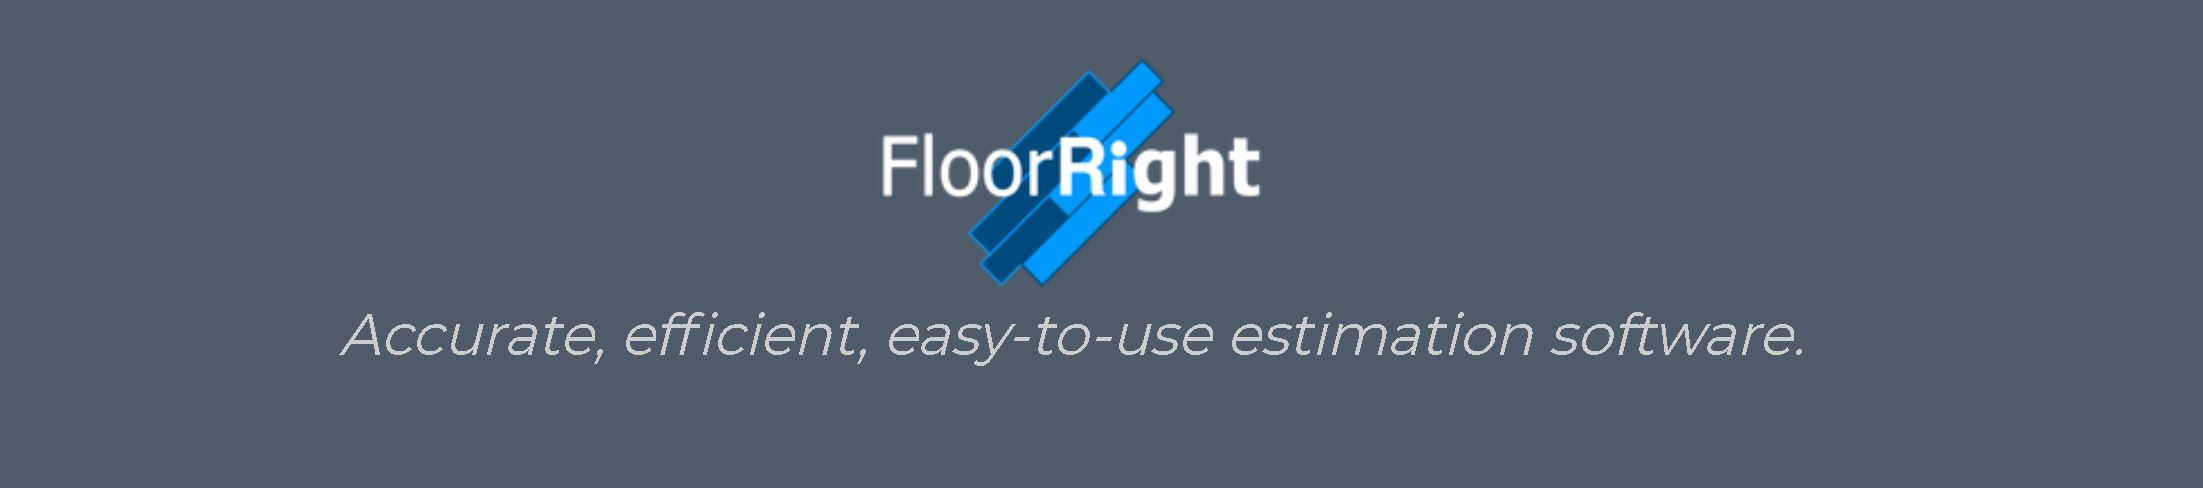 floorRight.jpg